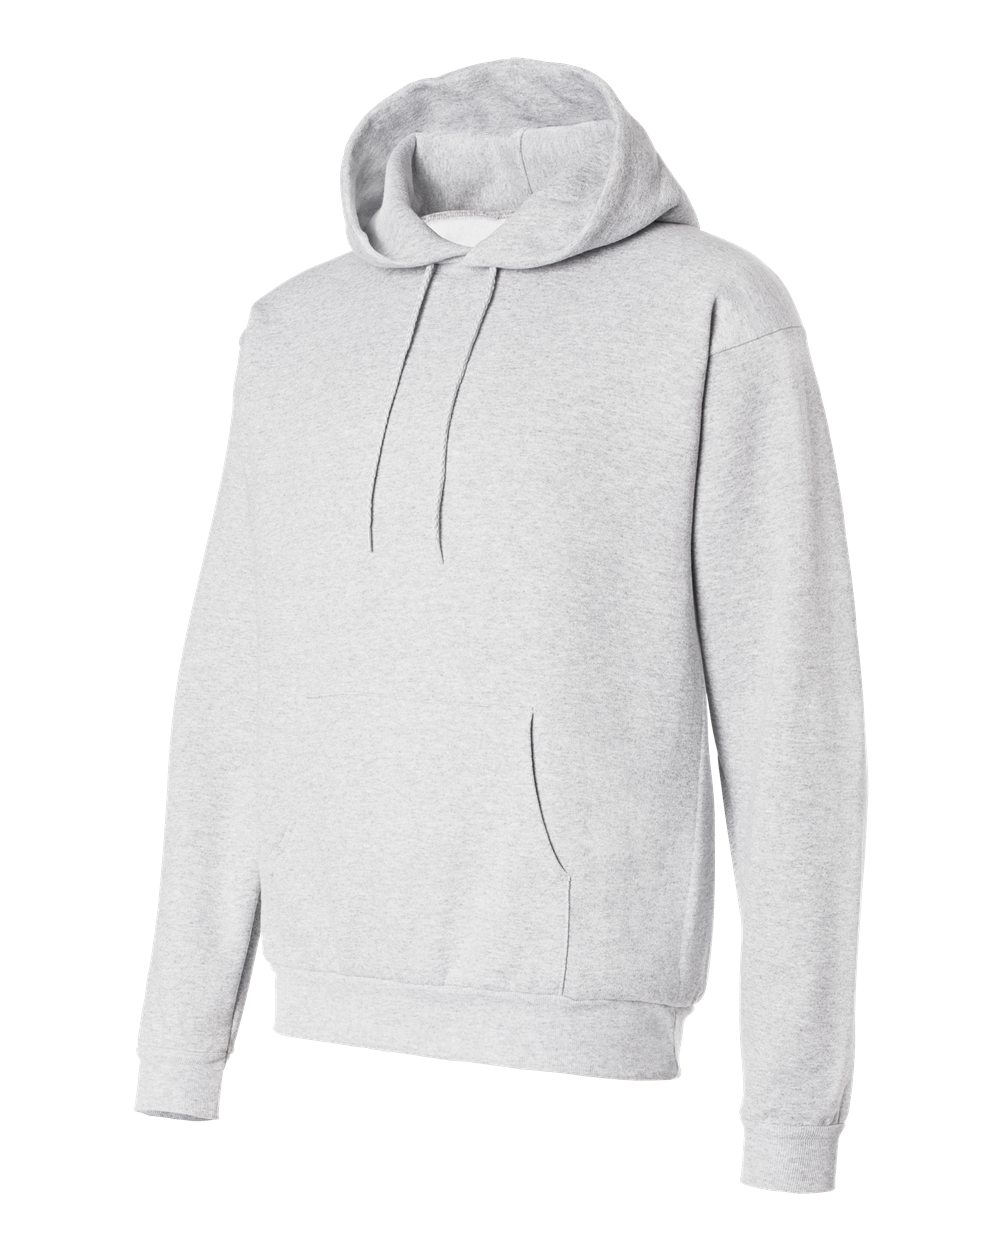 Hanes P170 - Ecosmart Hooded Sweatshirt